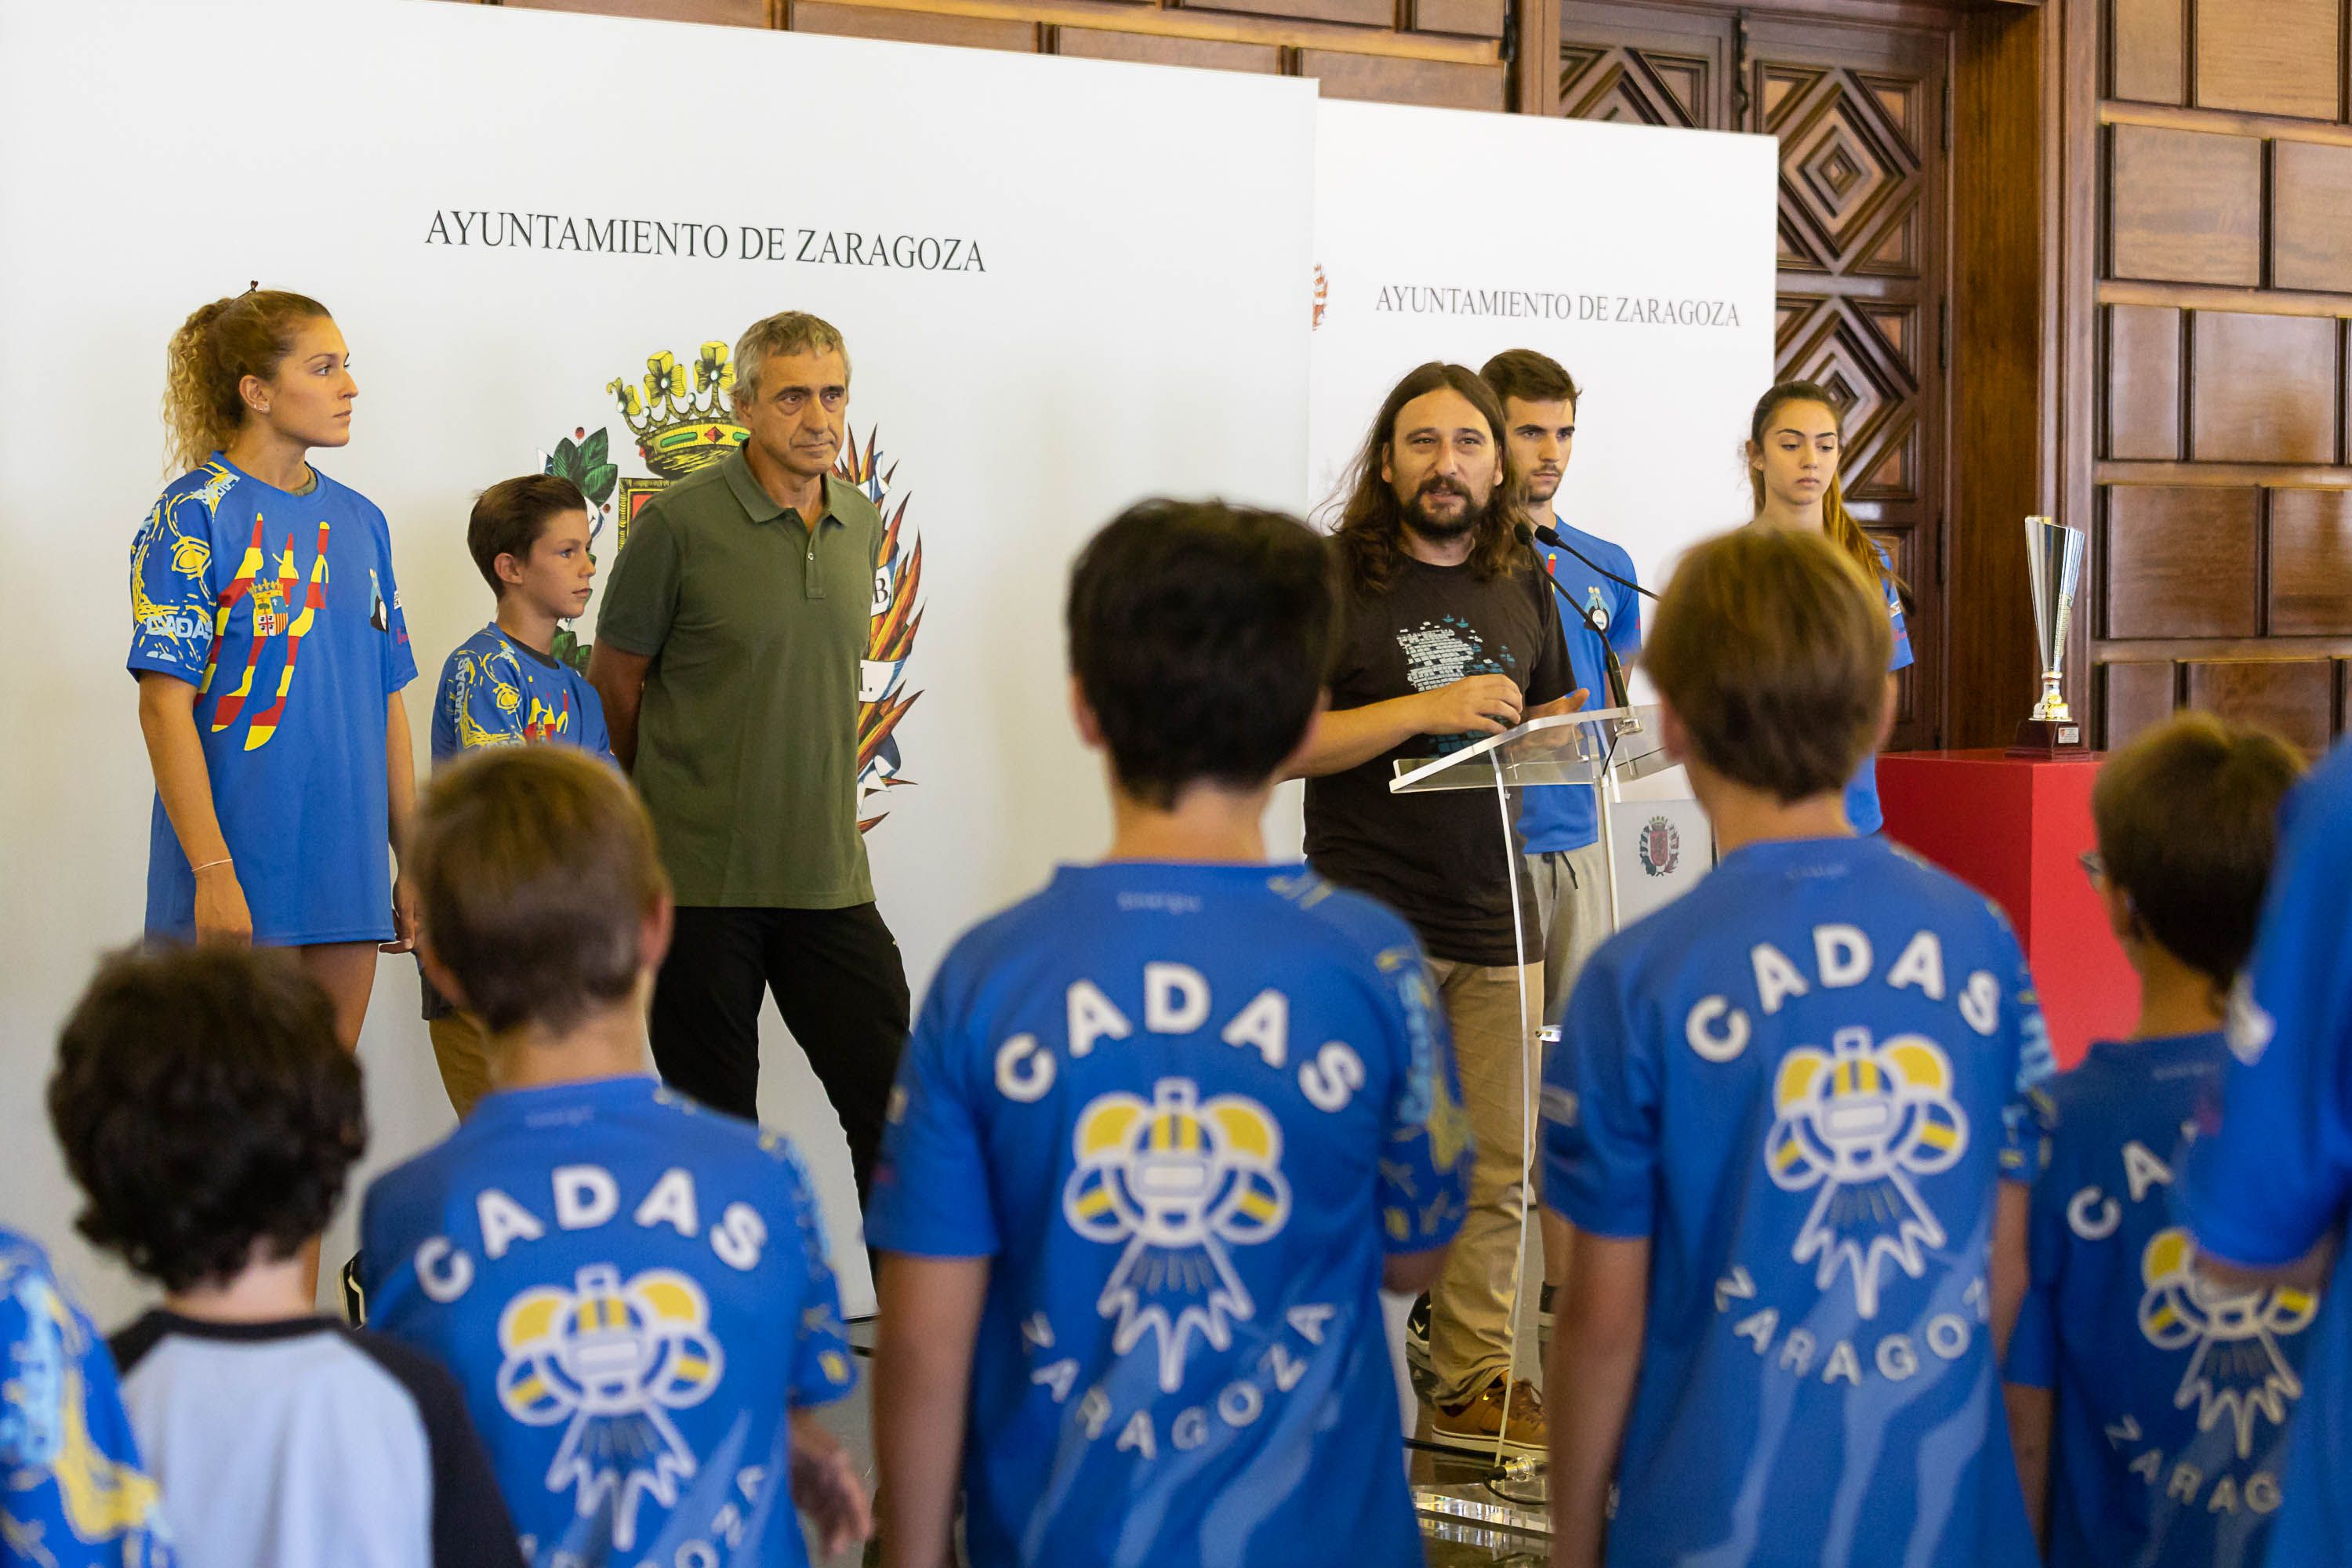 El CADAS ha sido recibido en el Ayuntamiento de Zaragoza. | Foto: Ayuntamiento de Zaragoza